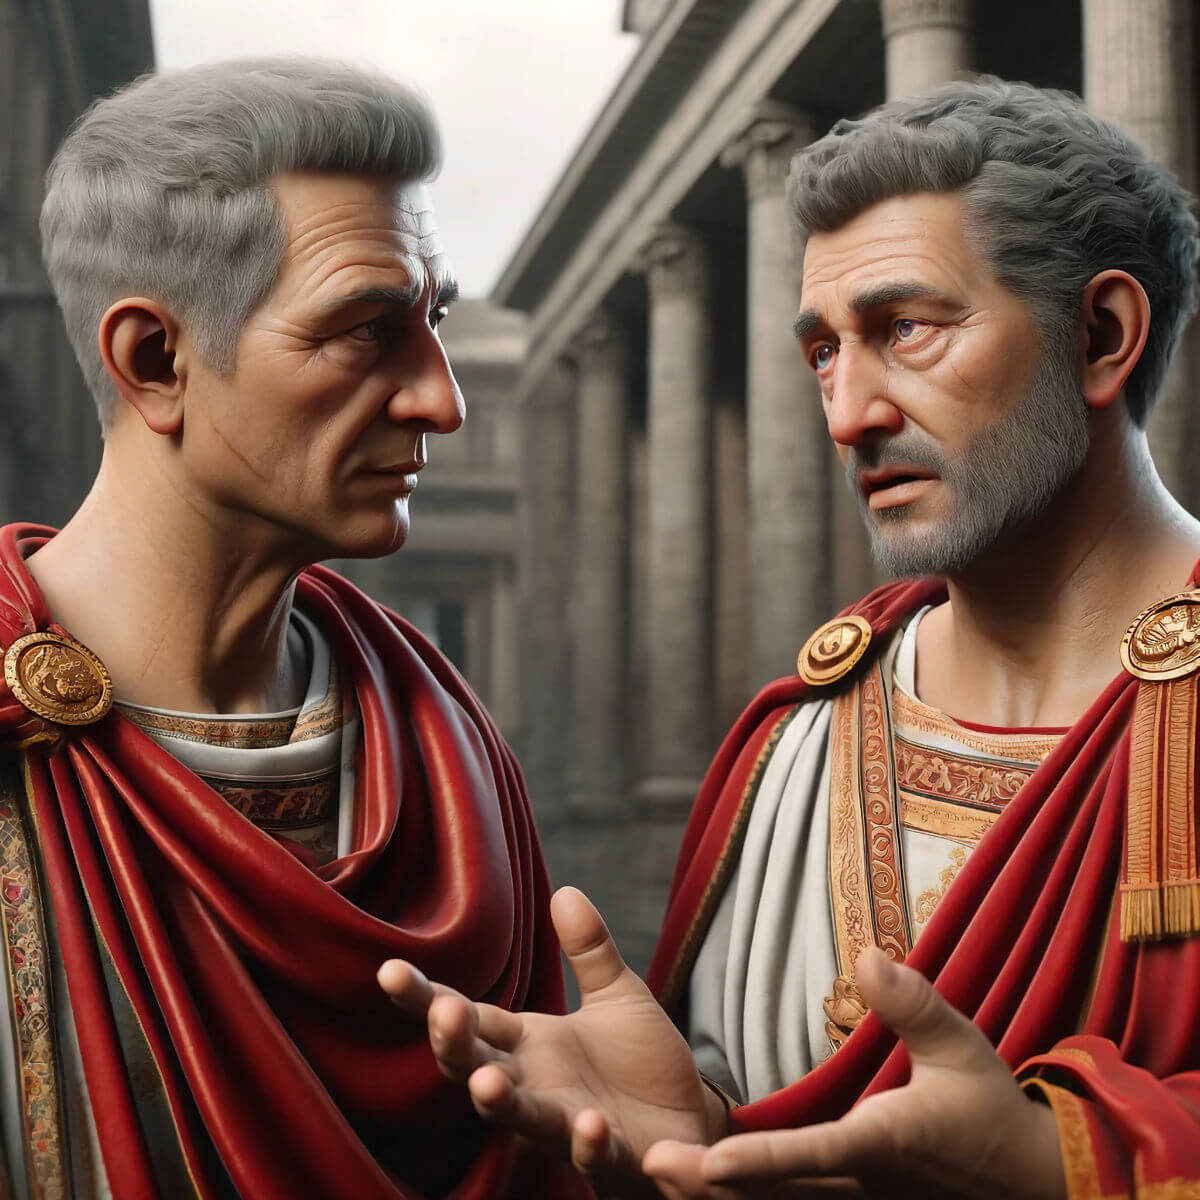 Two Roman consuls in discussion